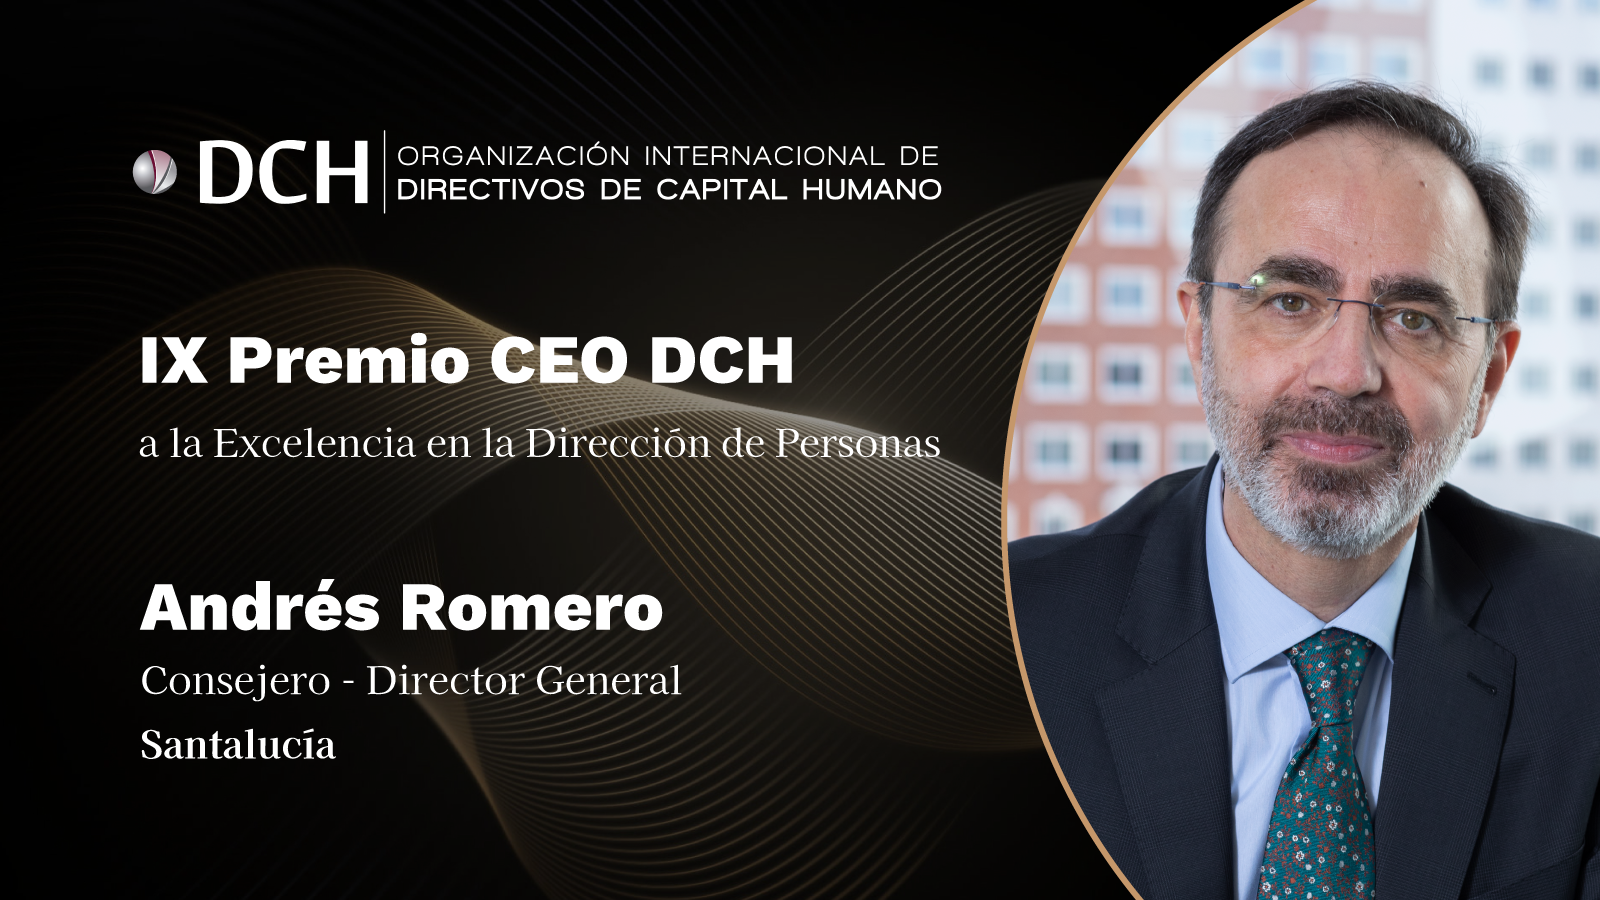 Andrés Romero, Consejero - Director General de Santalucía, IX Premio CEO DCH a la Excelencia en la Dirección de Personas